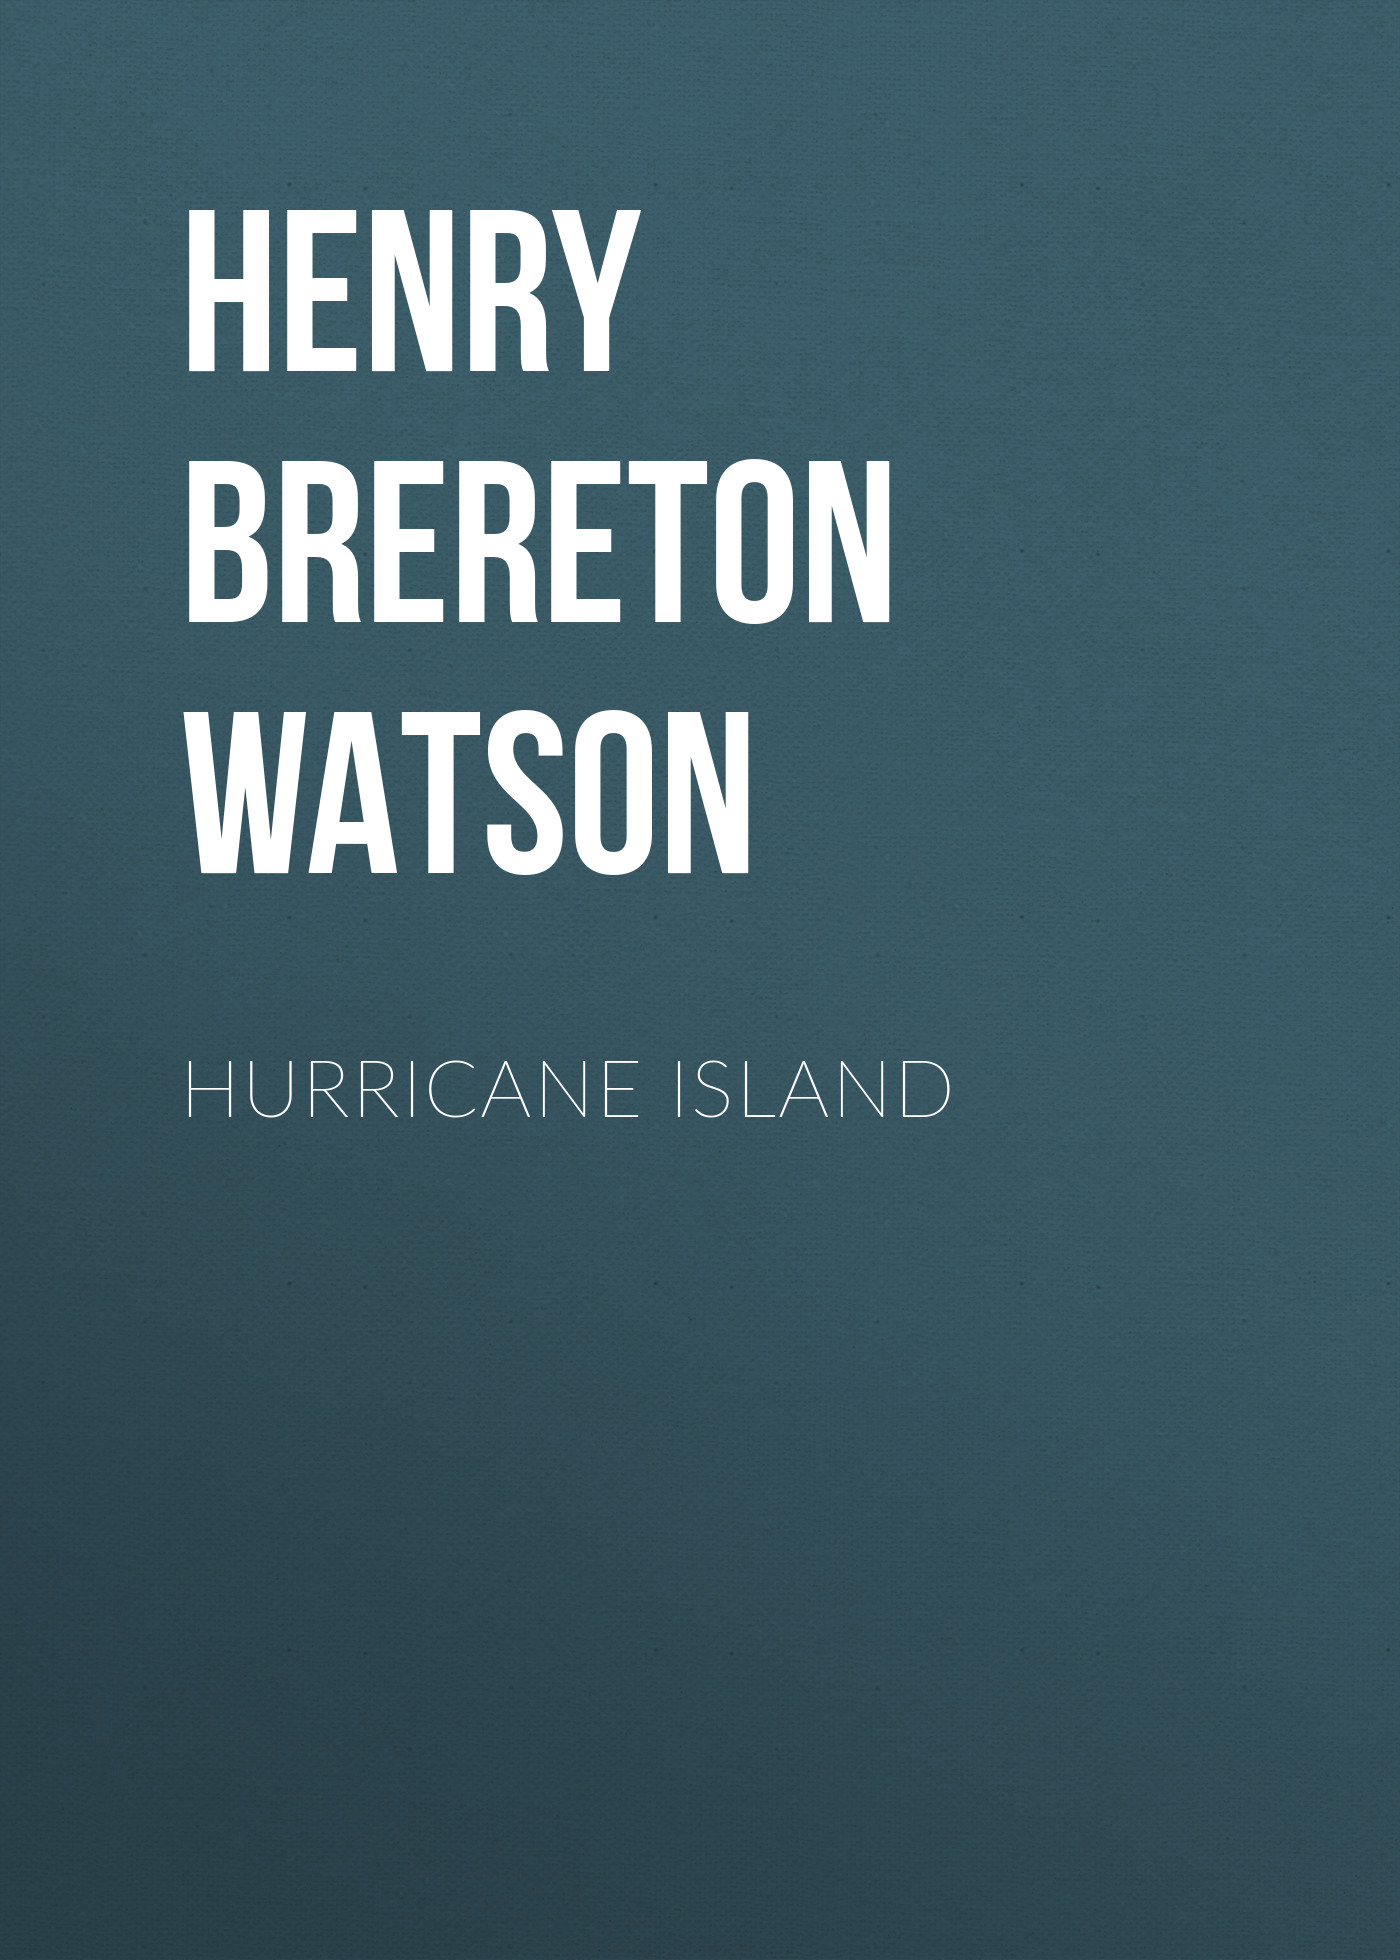 Книга Hurricane Island из серии , созданная Henry Watson, может относится к жанру Зарубежные любовные романы, Зарубежная старинная литература, Зарубежная классика. Стоимость электронной книги Hurricane Island с идентификатором 34336930 составляет 0 руб.